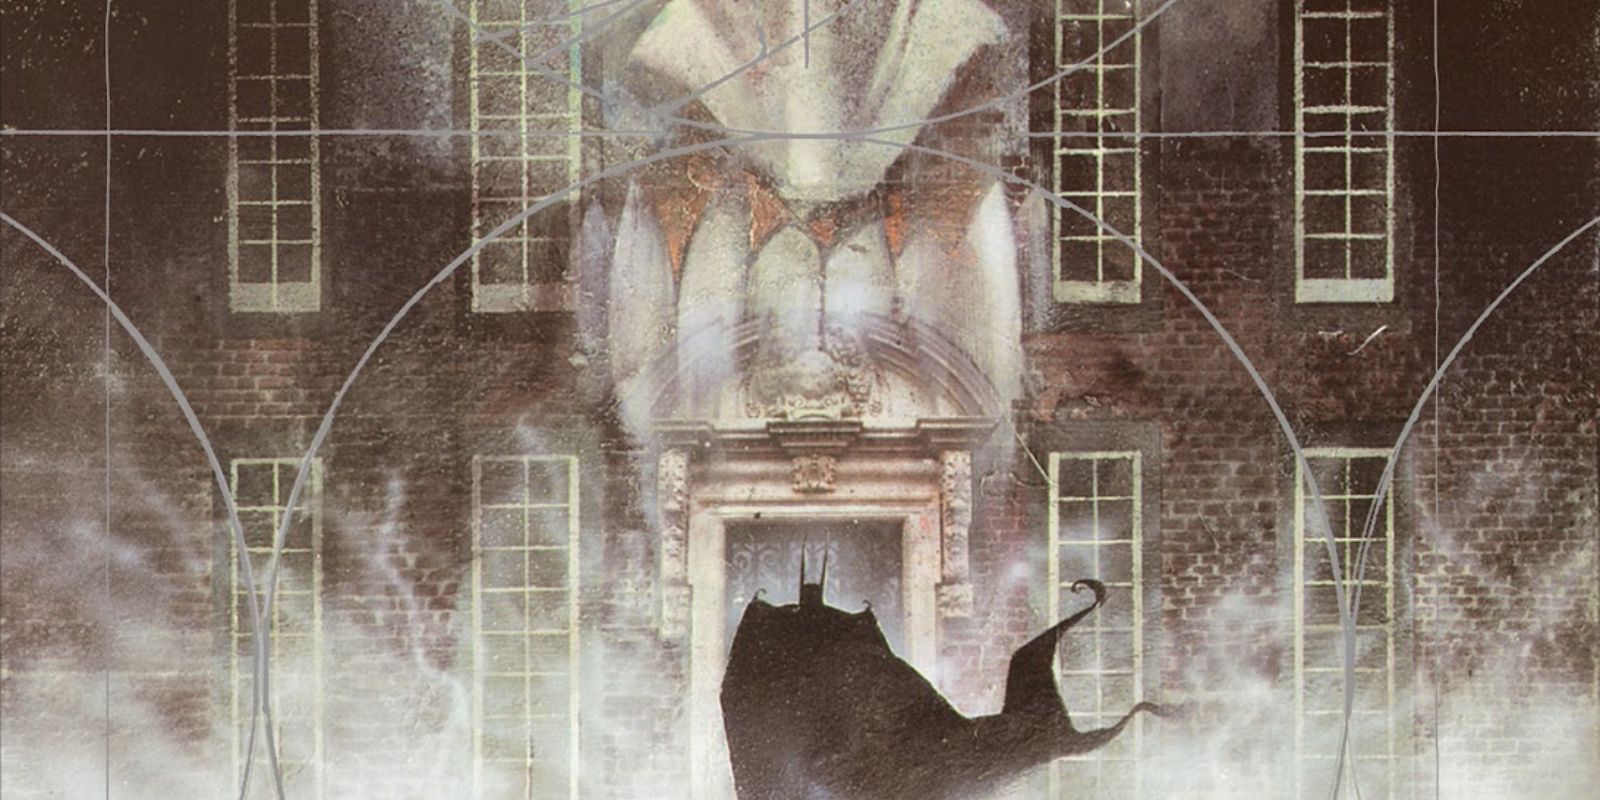 DC Comics' Batman Arkham Asylum Cover, depicting Batman walking into Arkham